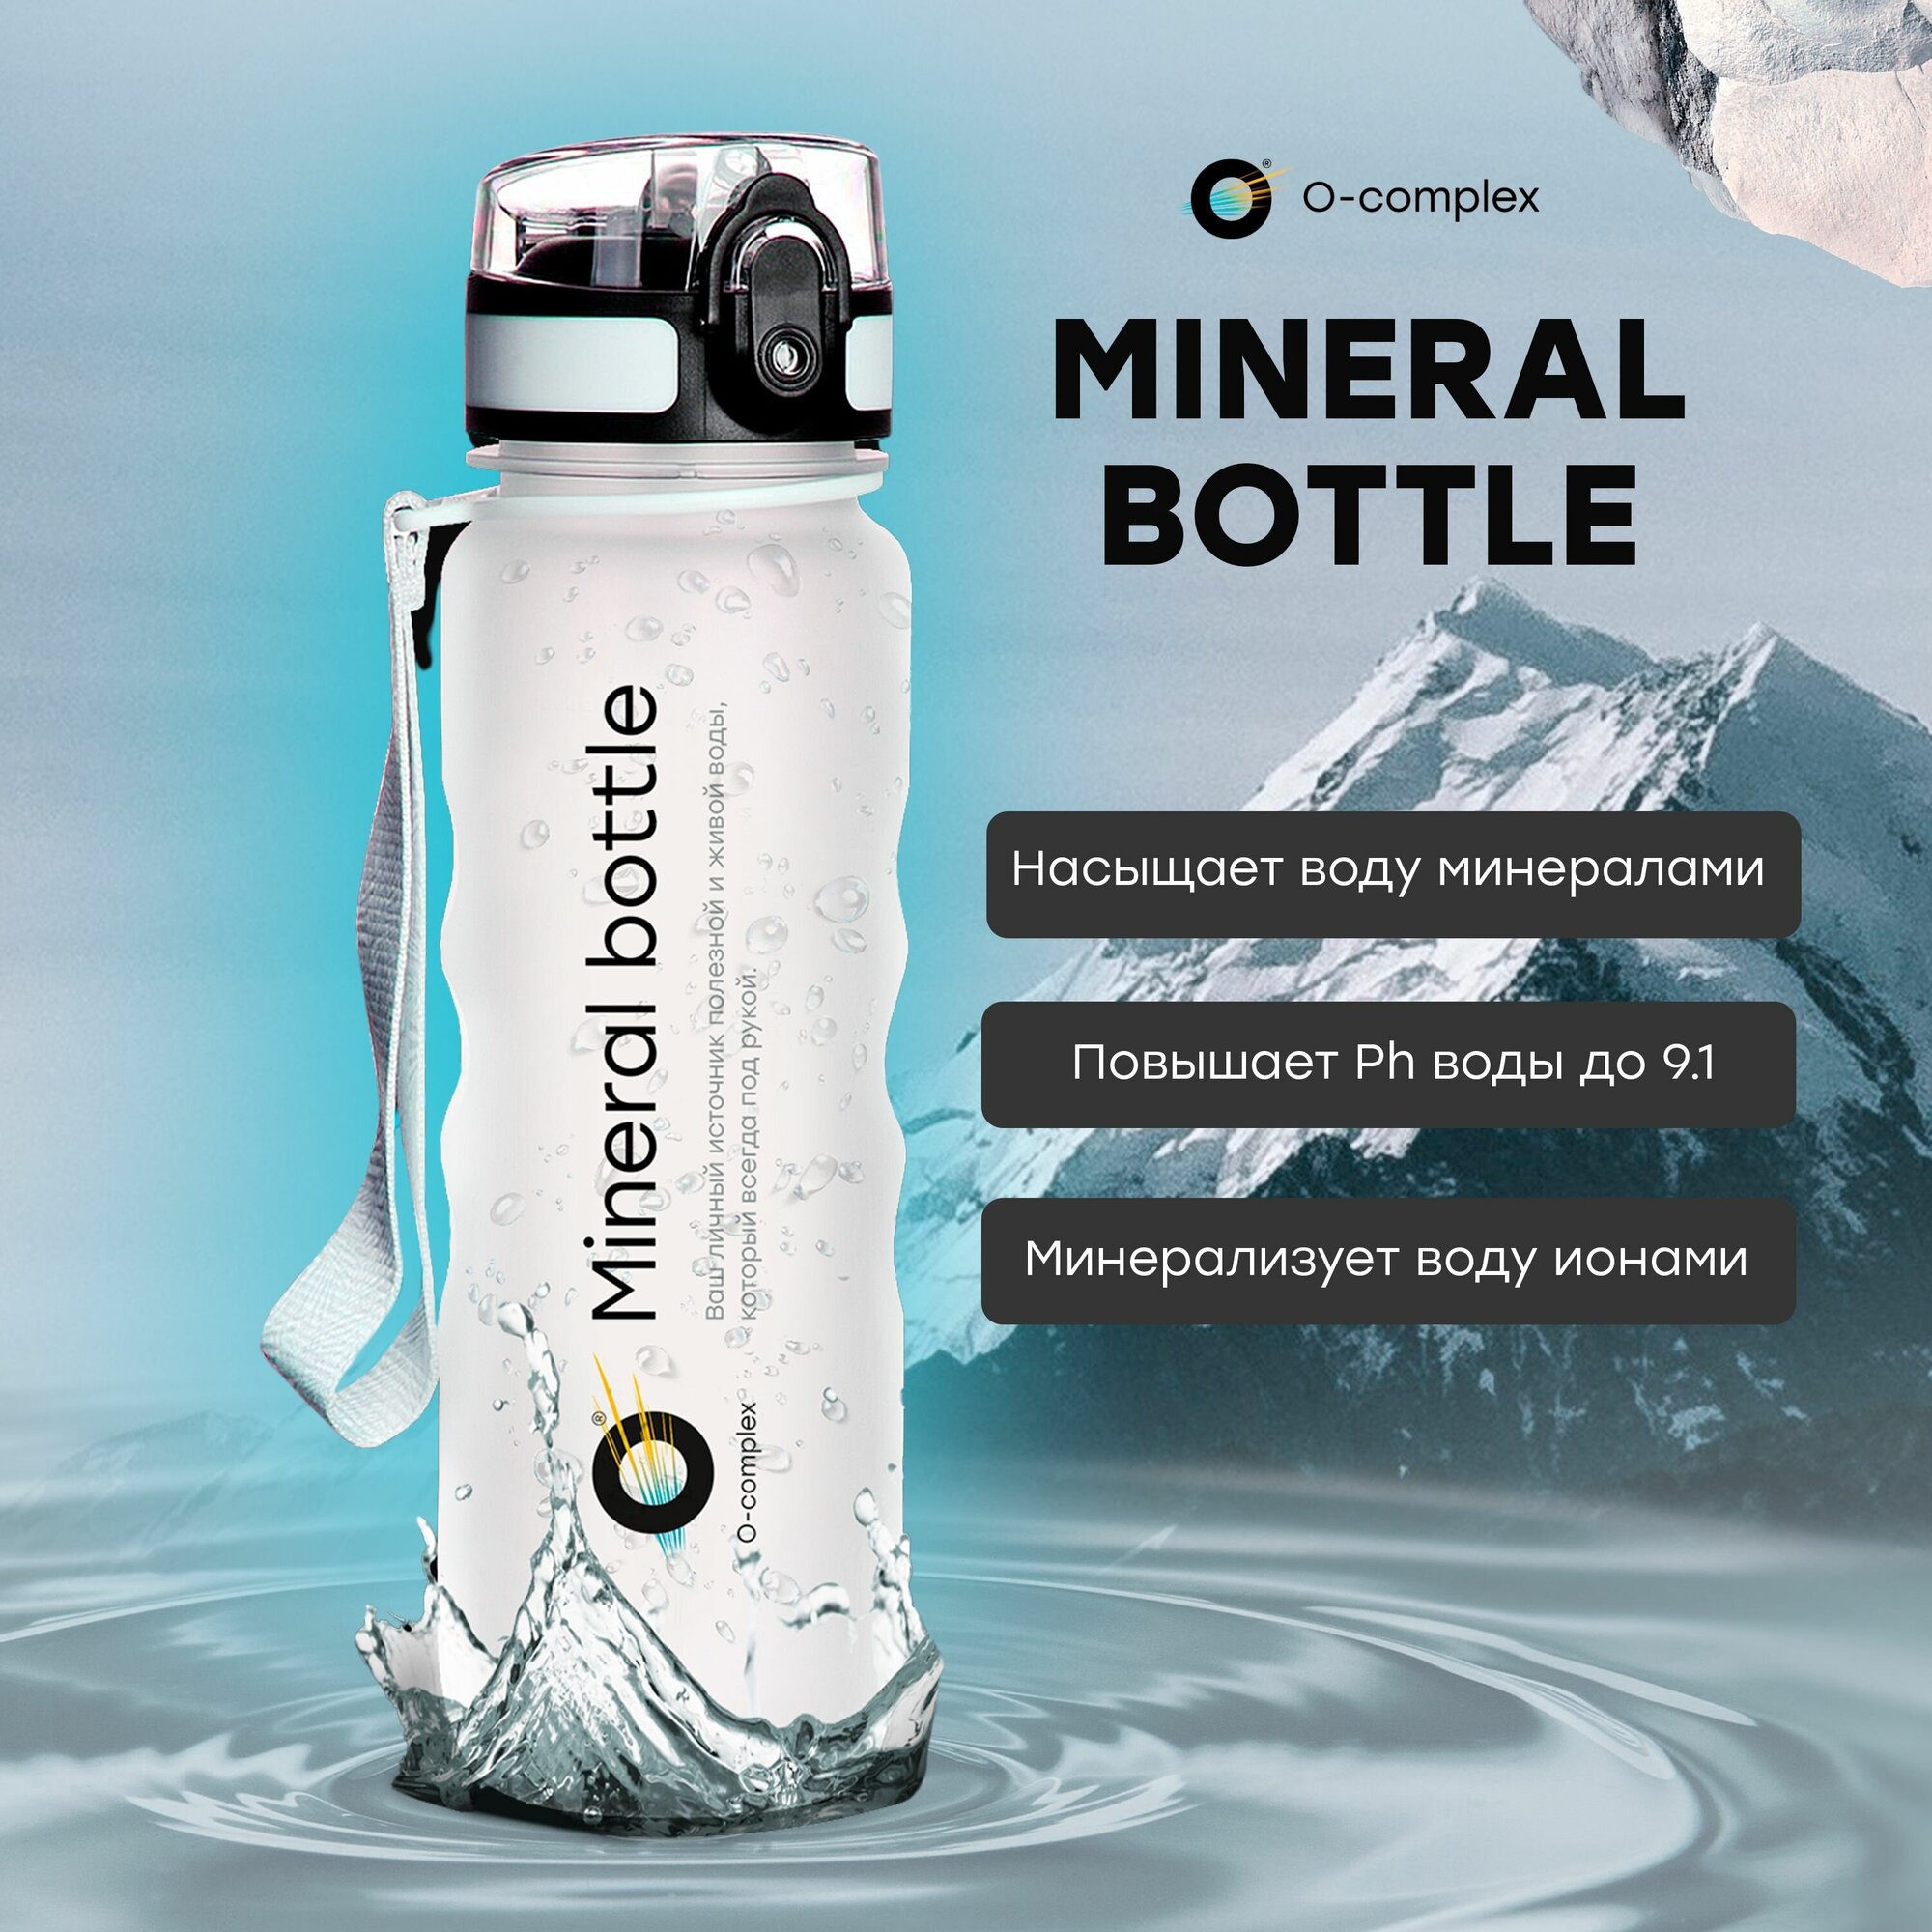 Mineral Bottle. Декоративная минеральная бутылка для создания живой полезной воды , обогащённой минералами. Спортивная бутылка , в зал.